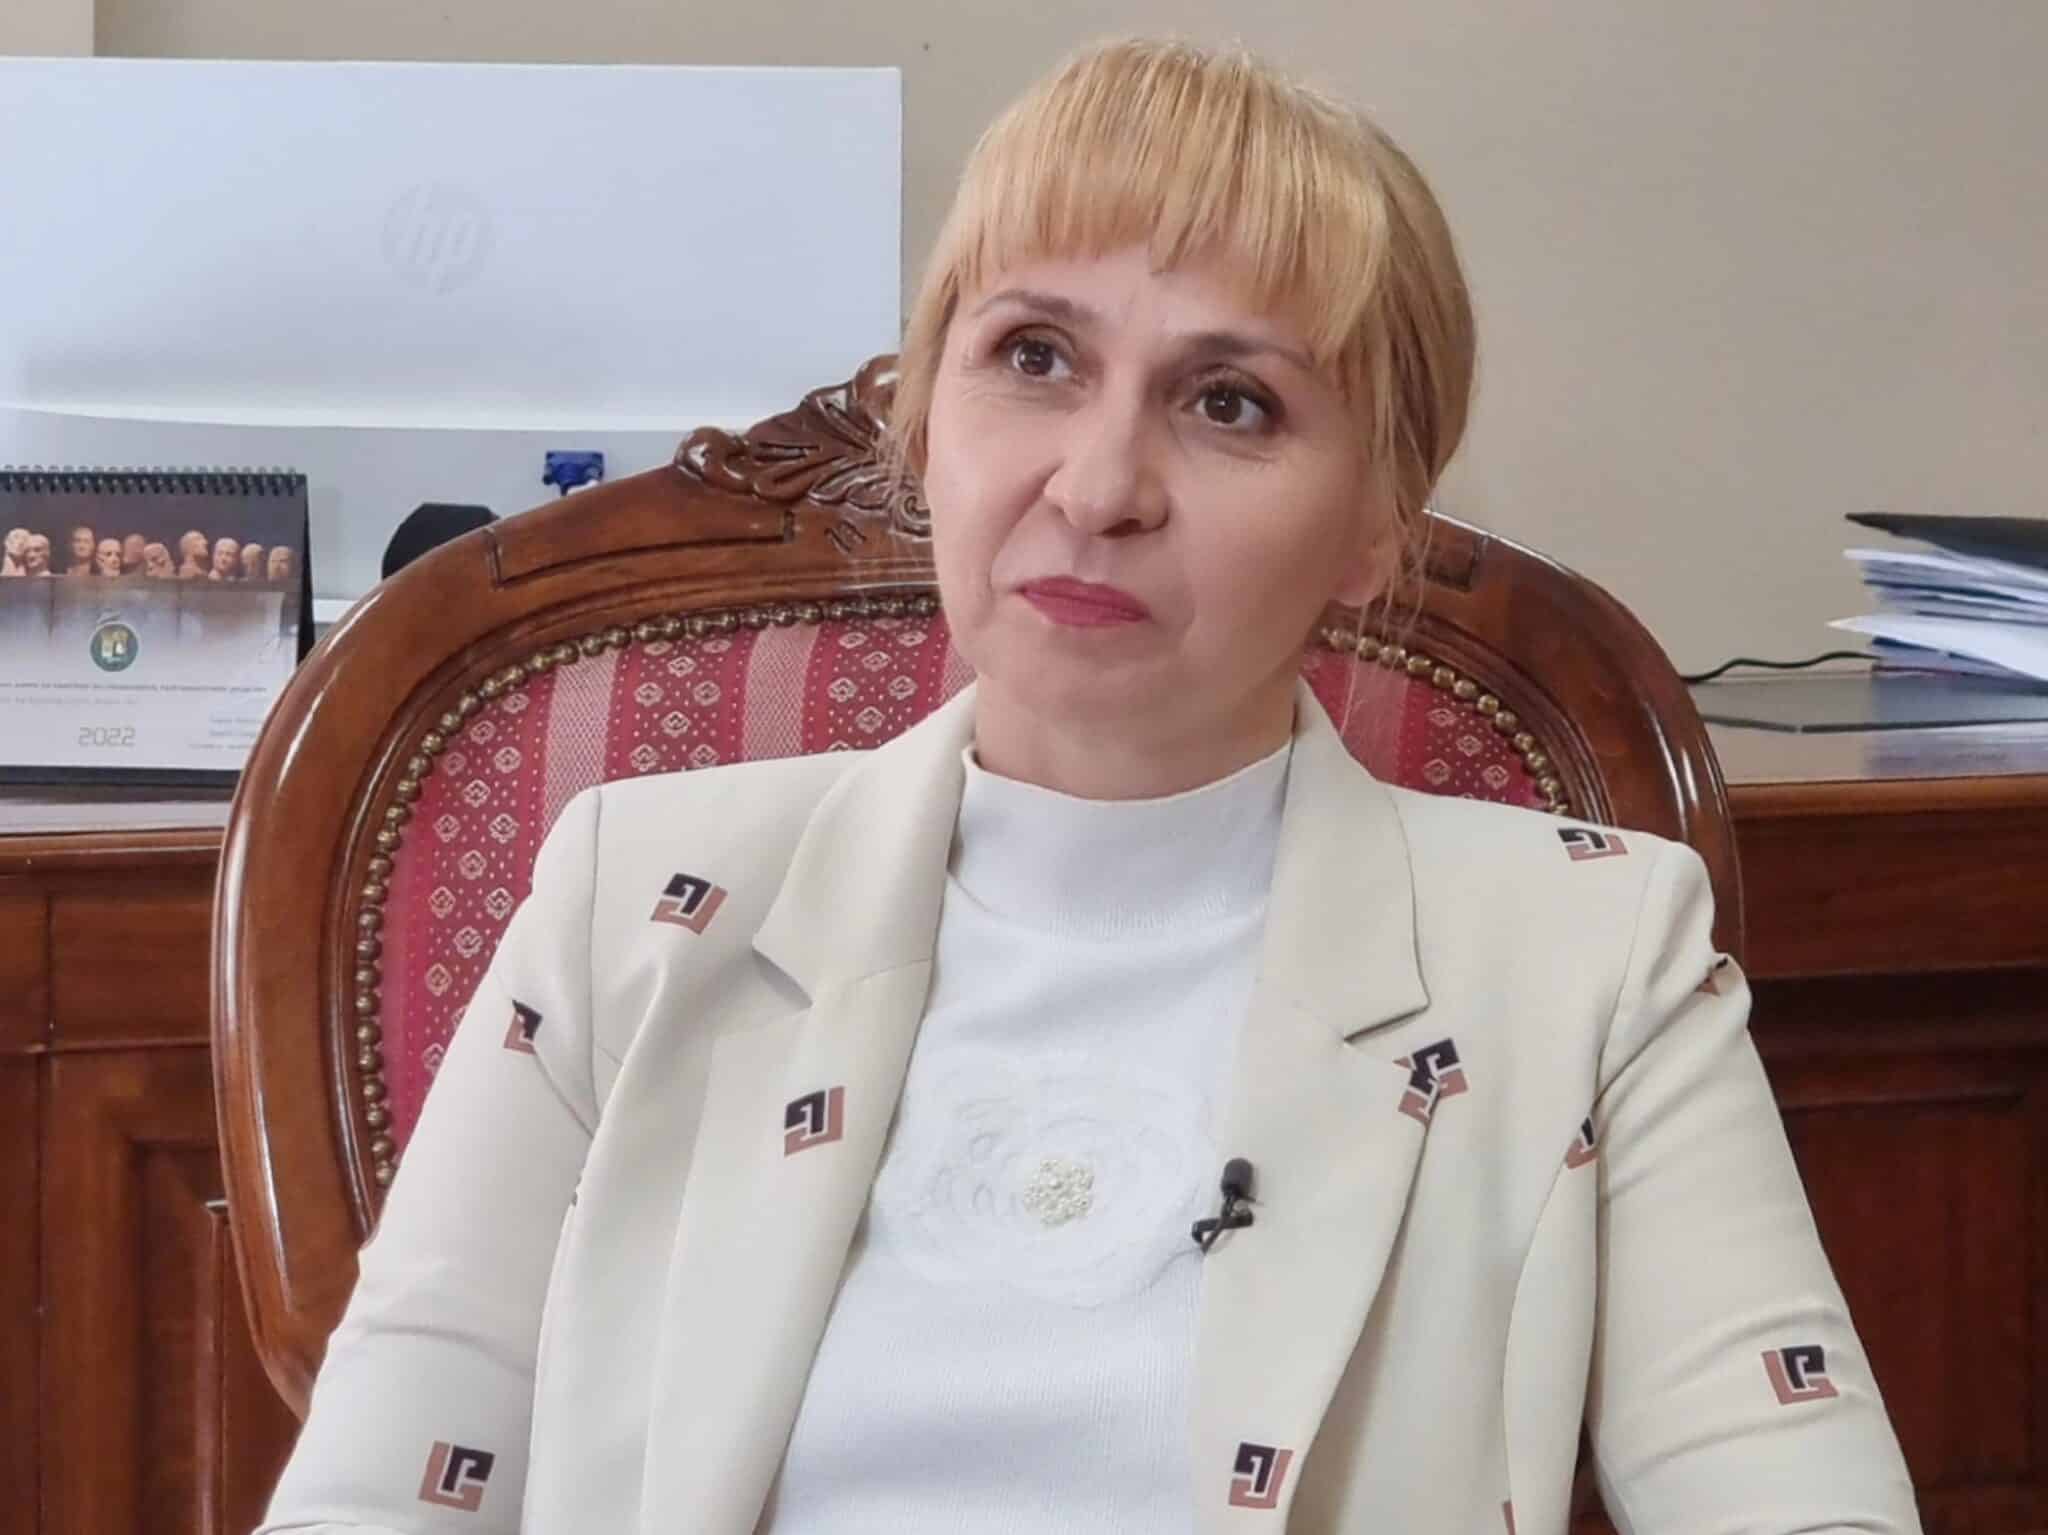 Омбудсманът Диана Ковачева e изпратила препоръка до представителя на Електрохолд